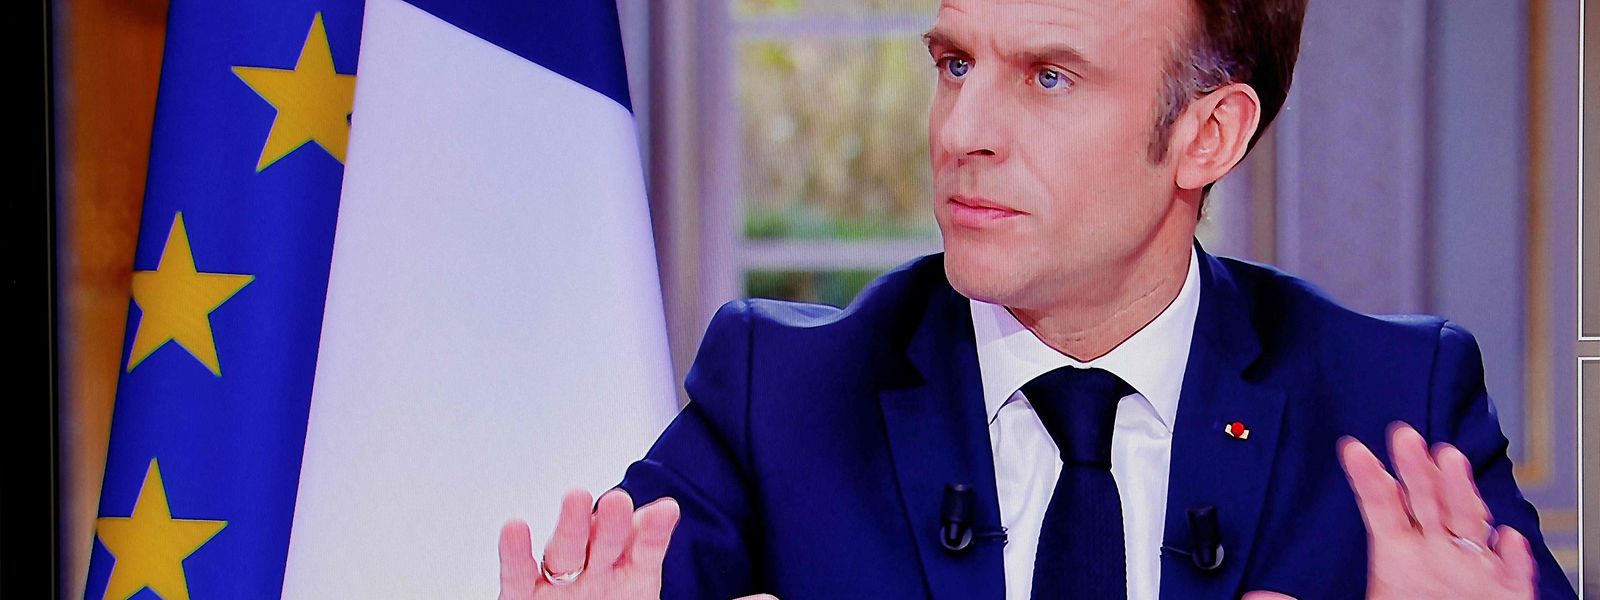 Macron steht weiter im Kreuzfeuer der Kritik - nun geht es um eine Uhr.